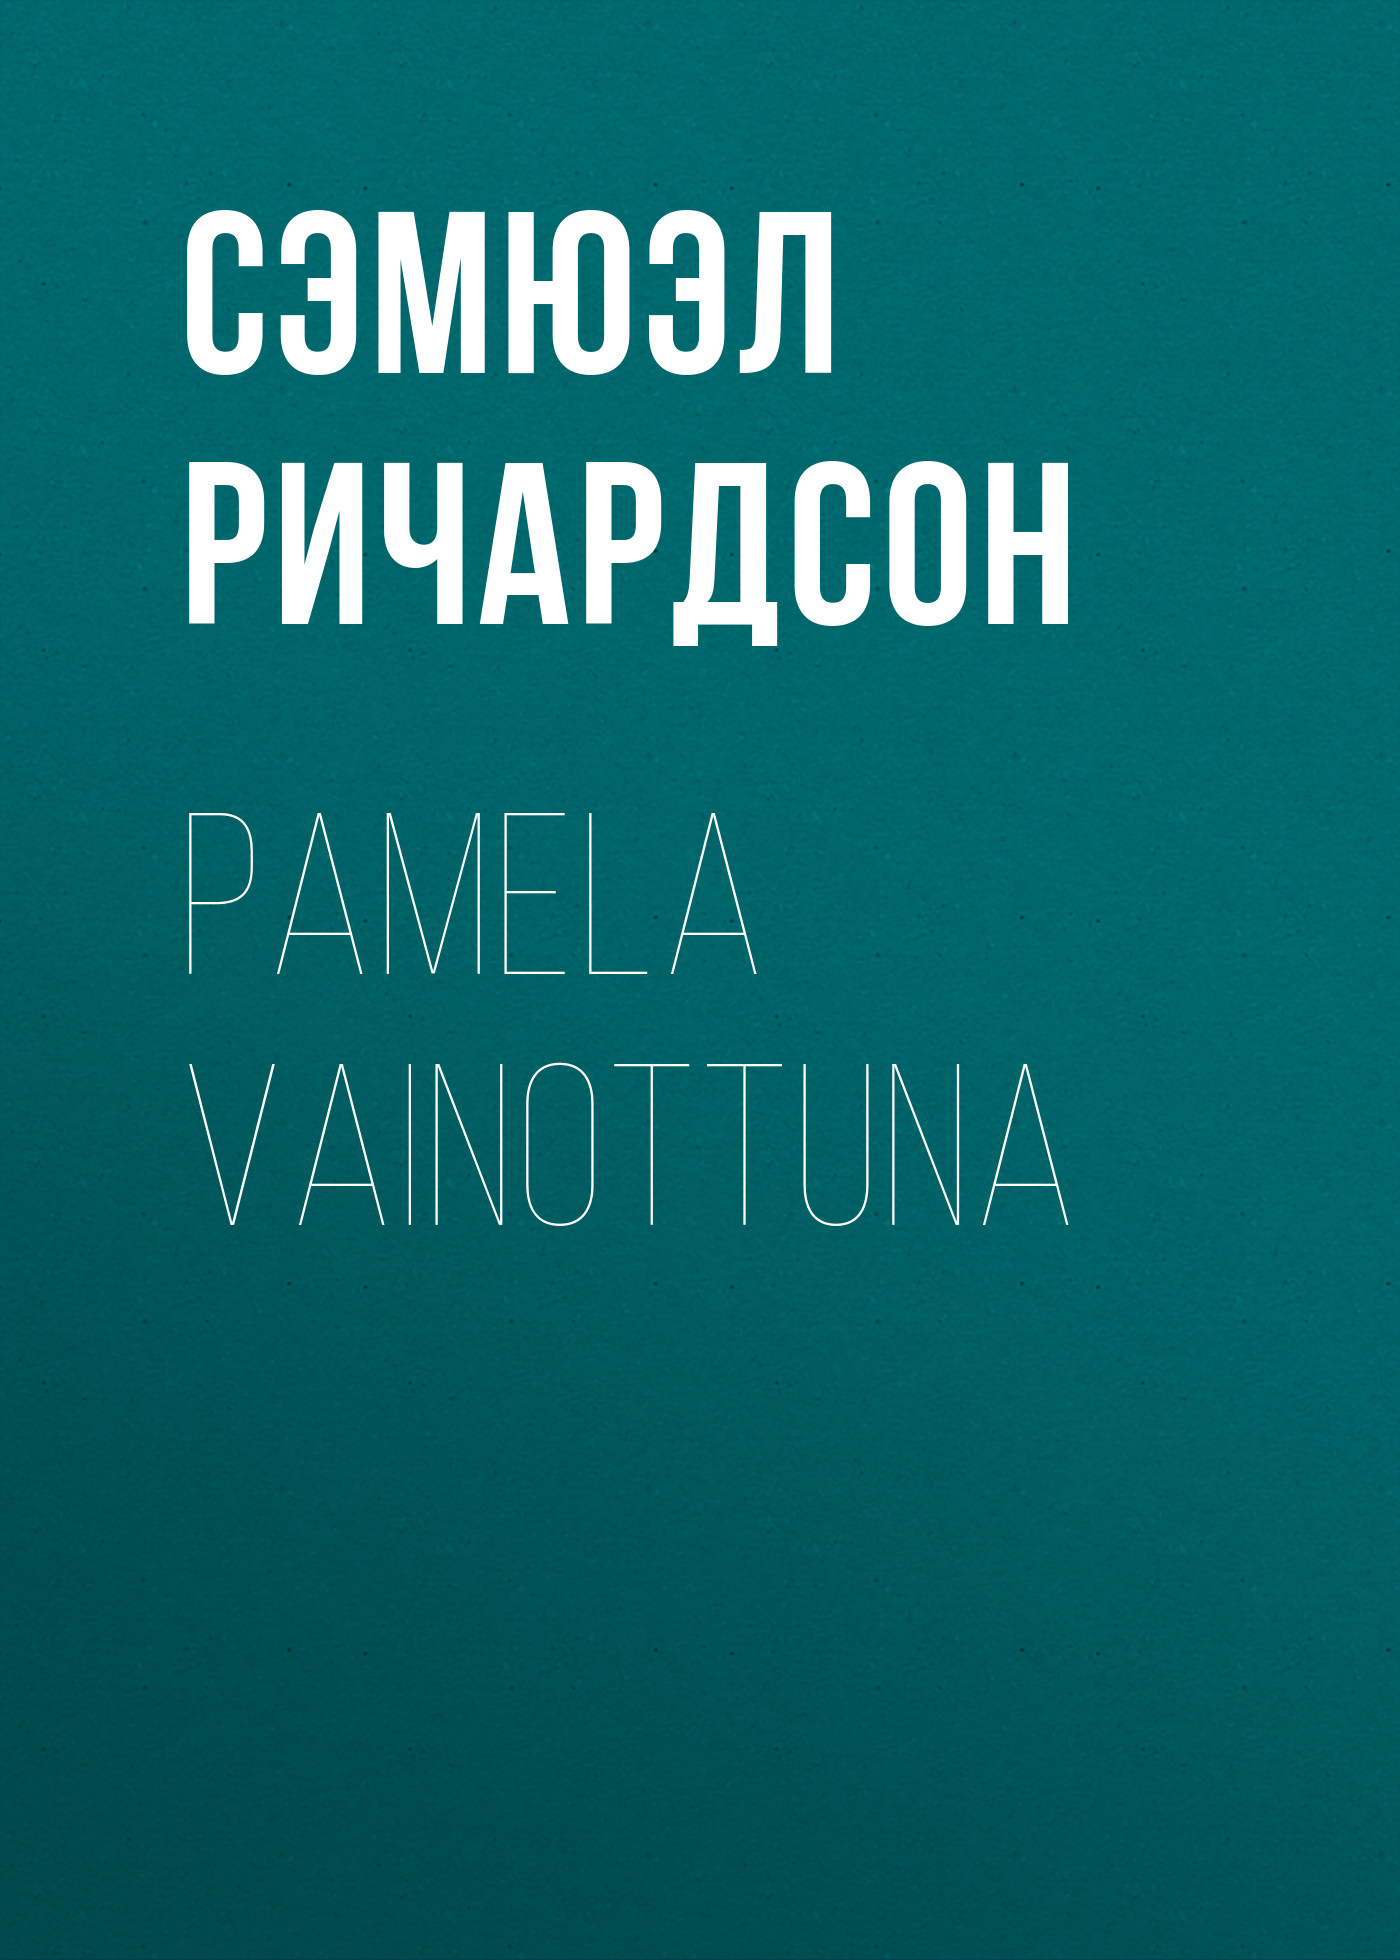 Книга Pamela vainottuna из серии , созданная Сэмюэл Ричардсон, может относится к жанру Социальная фантастика, Литература 18 века. Стоимость электронной книги Pamela vainottuna с идентификатором 34844158 составляет 0 руб.